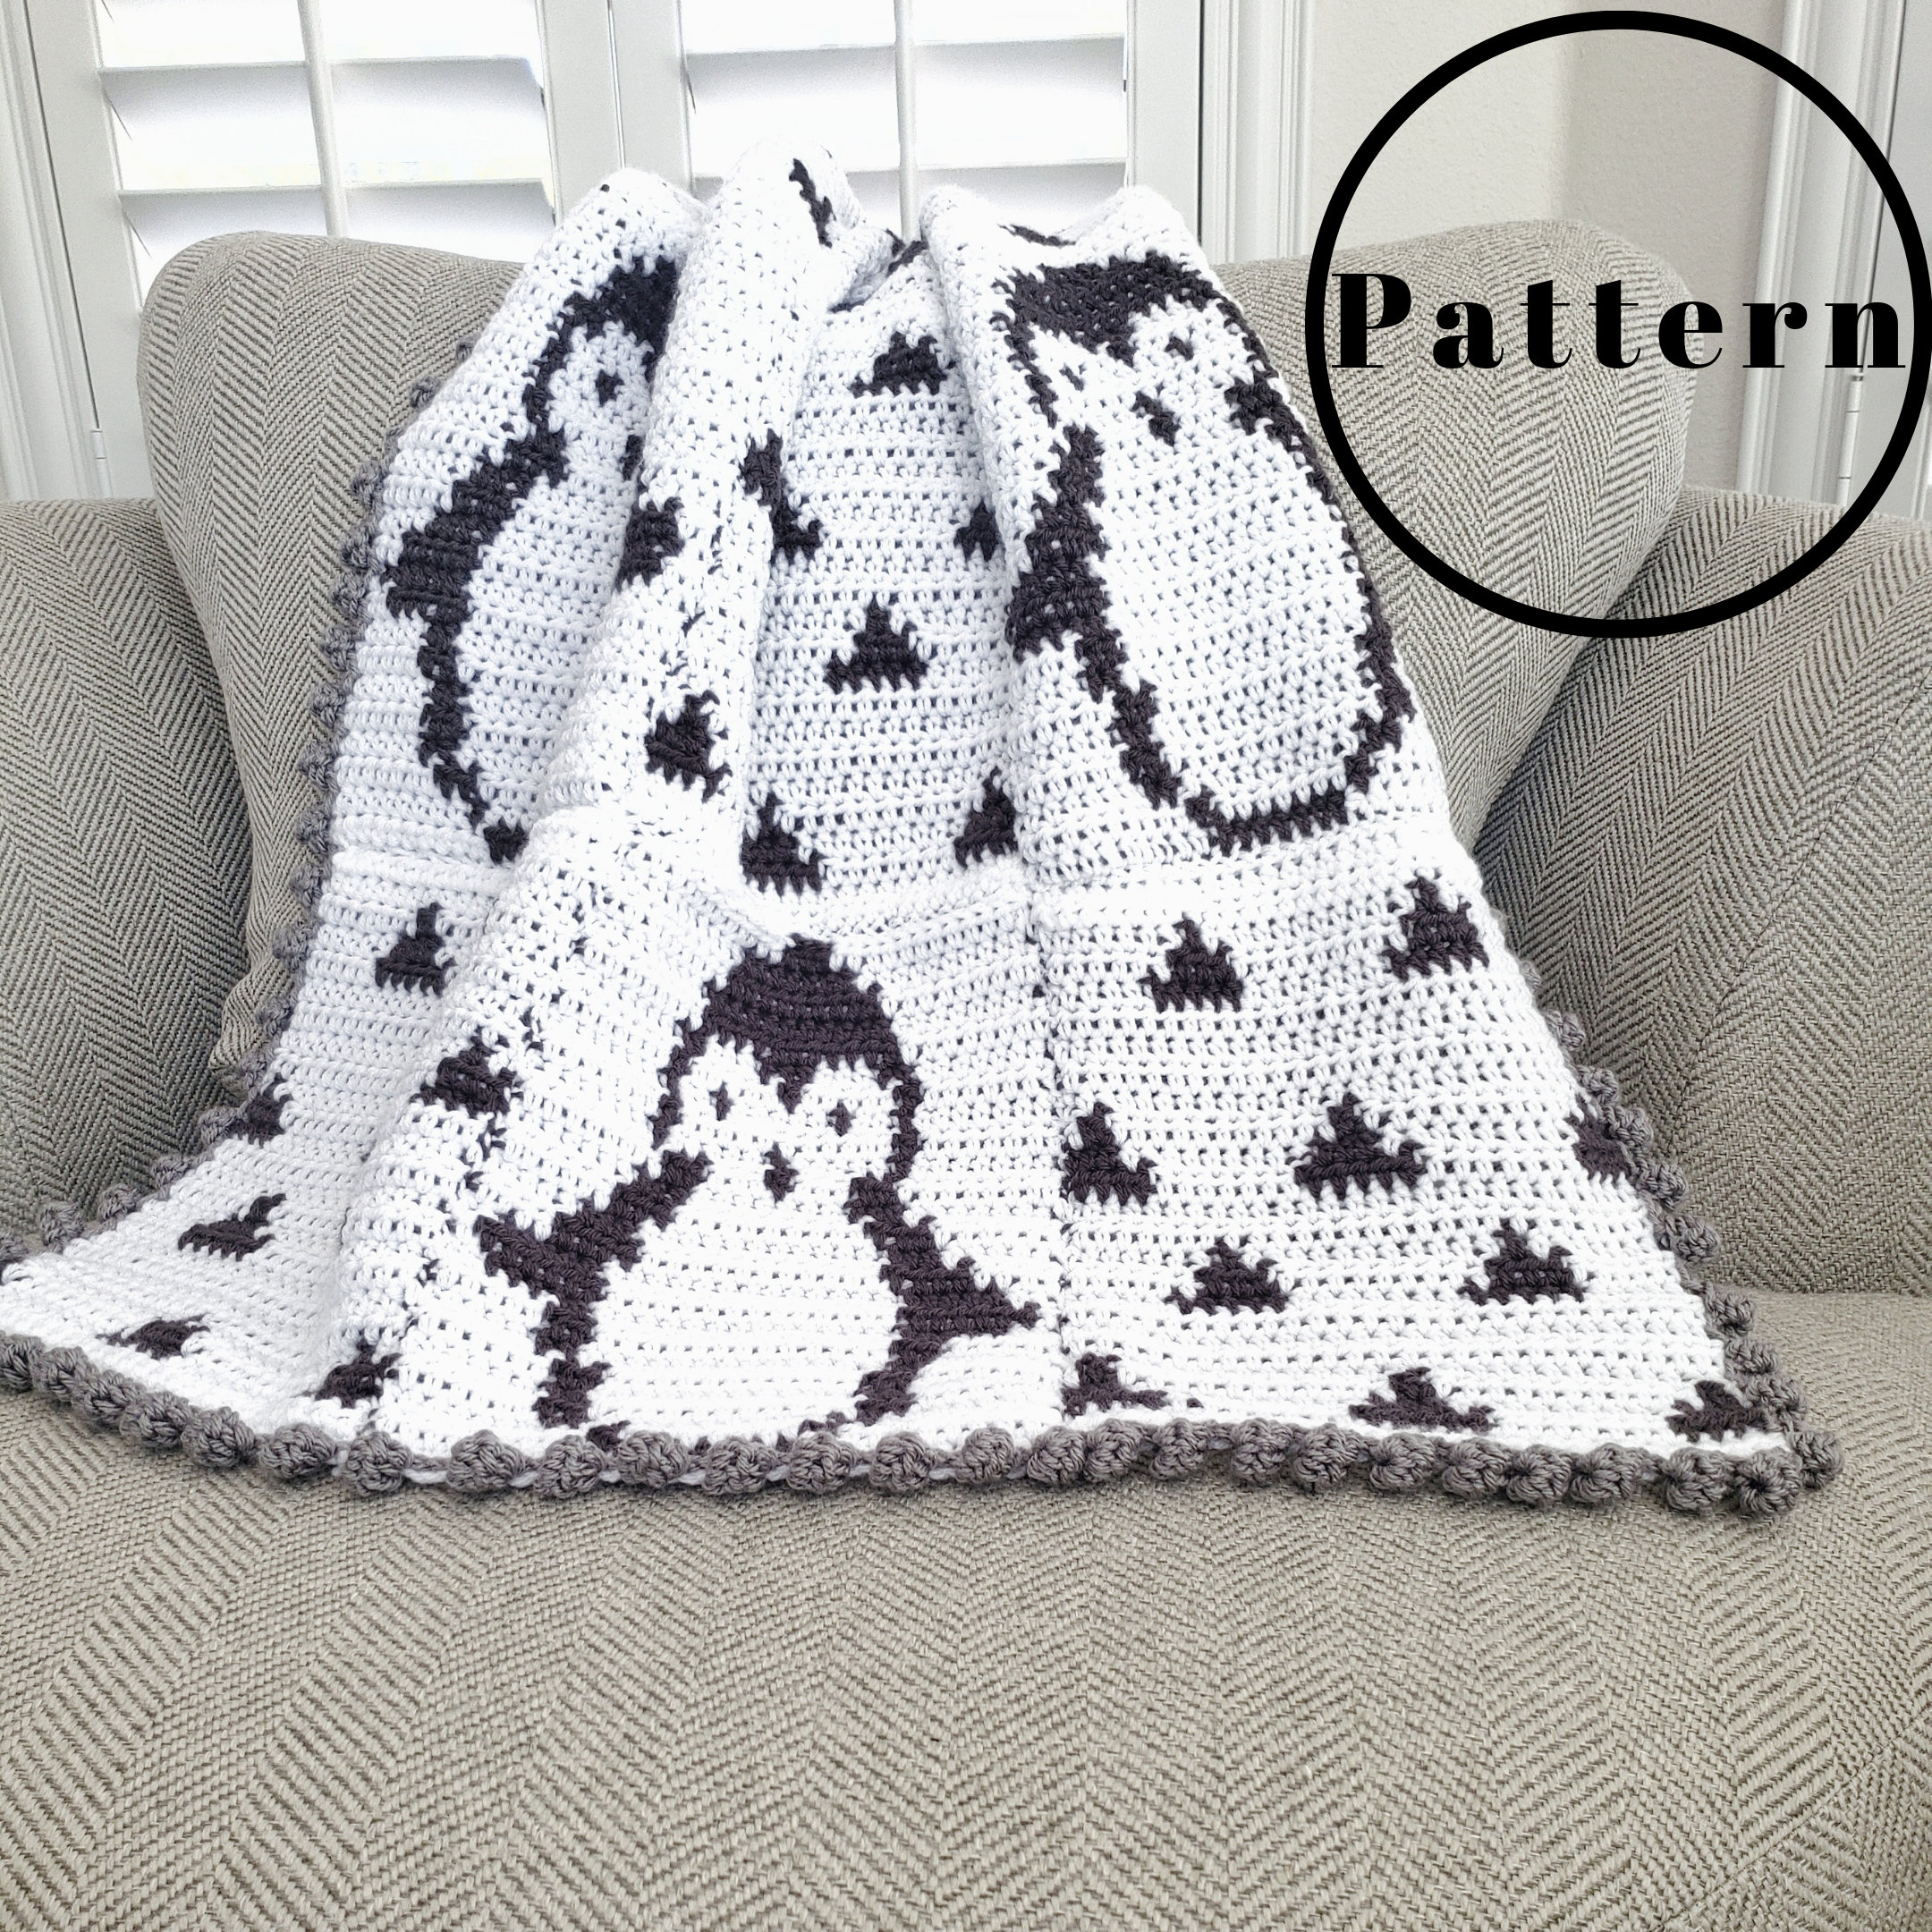 Penguin Blanket Pattern